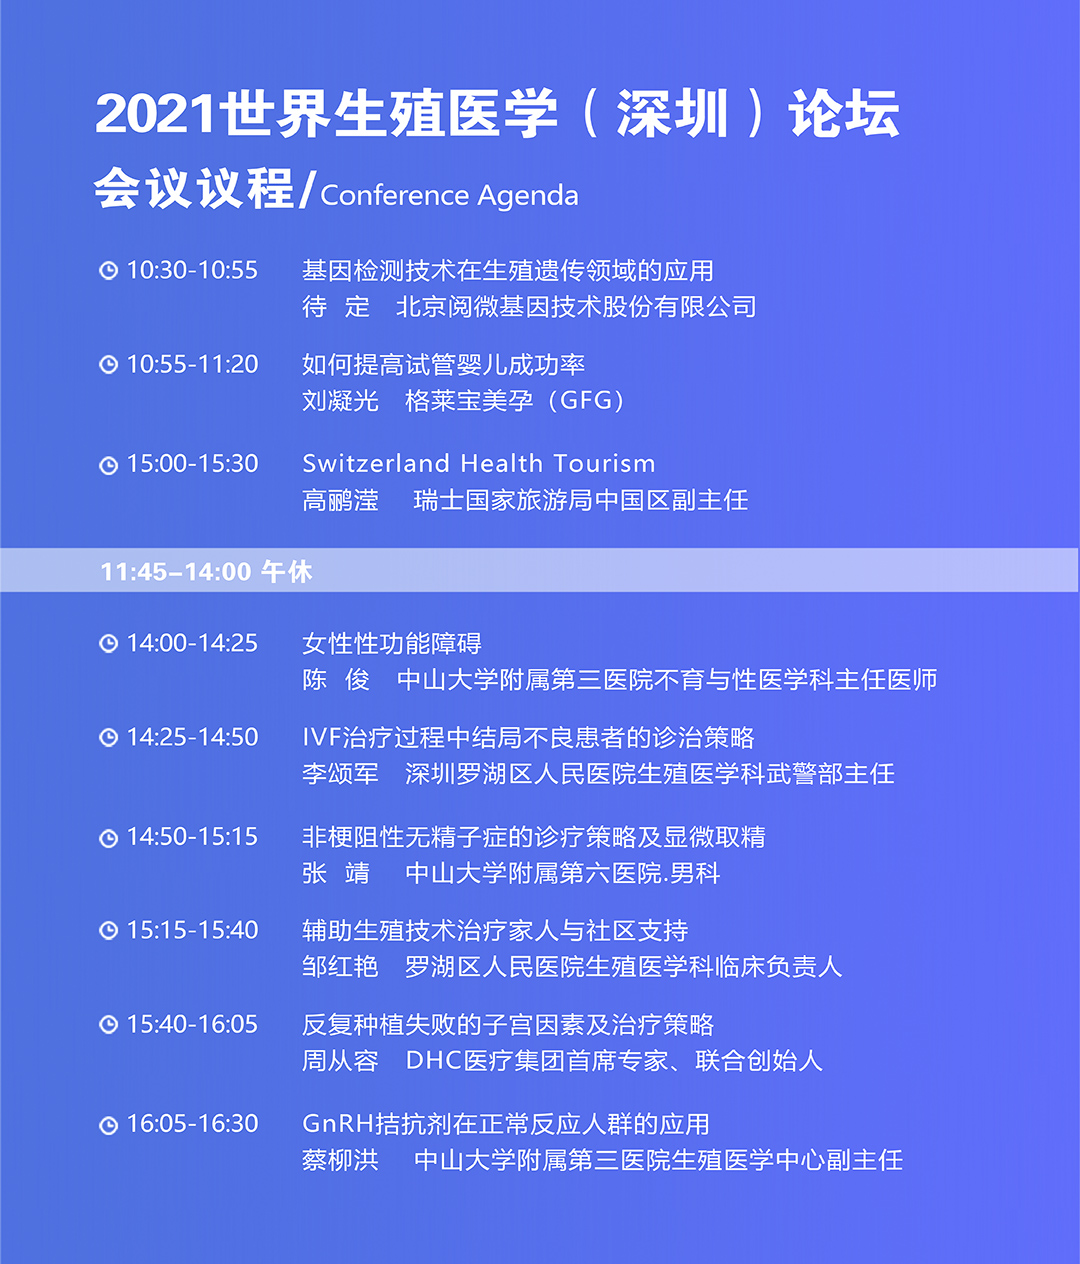 2021“一带一路”深圳国际医疗旅游与健康大会